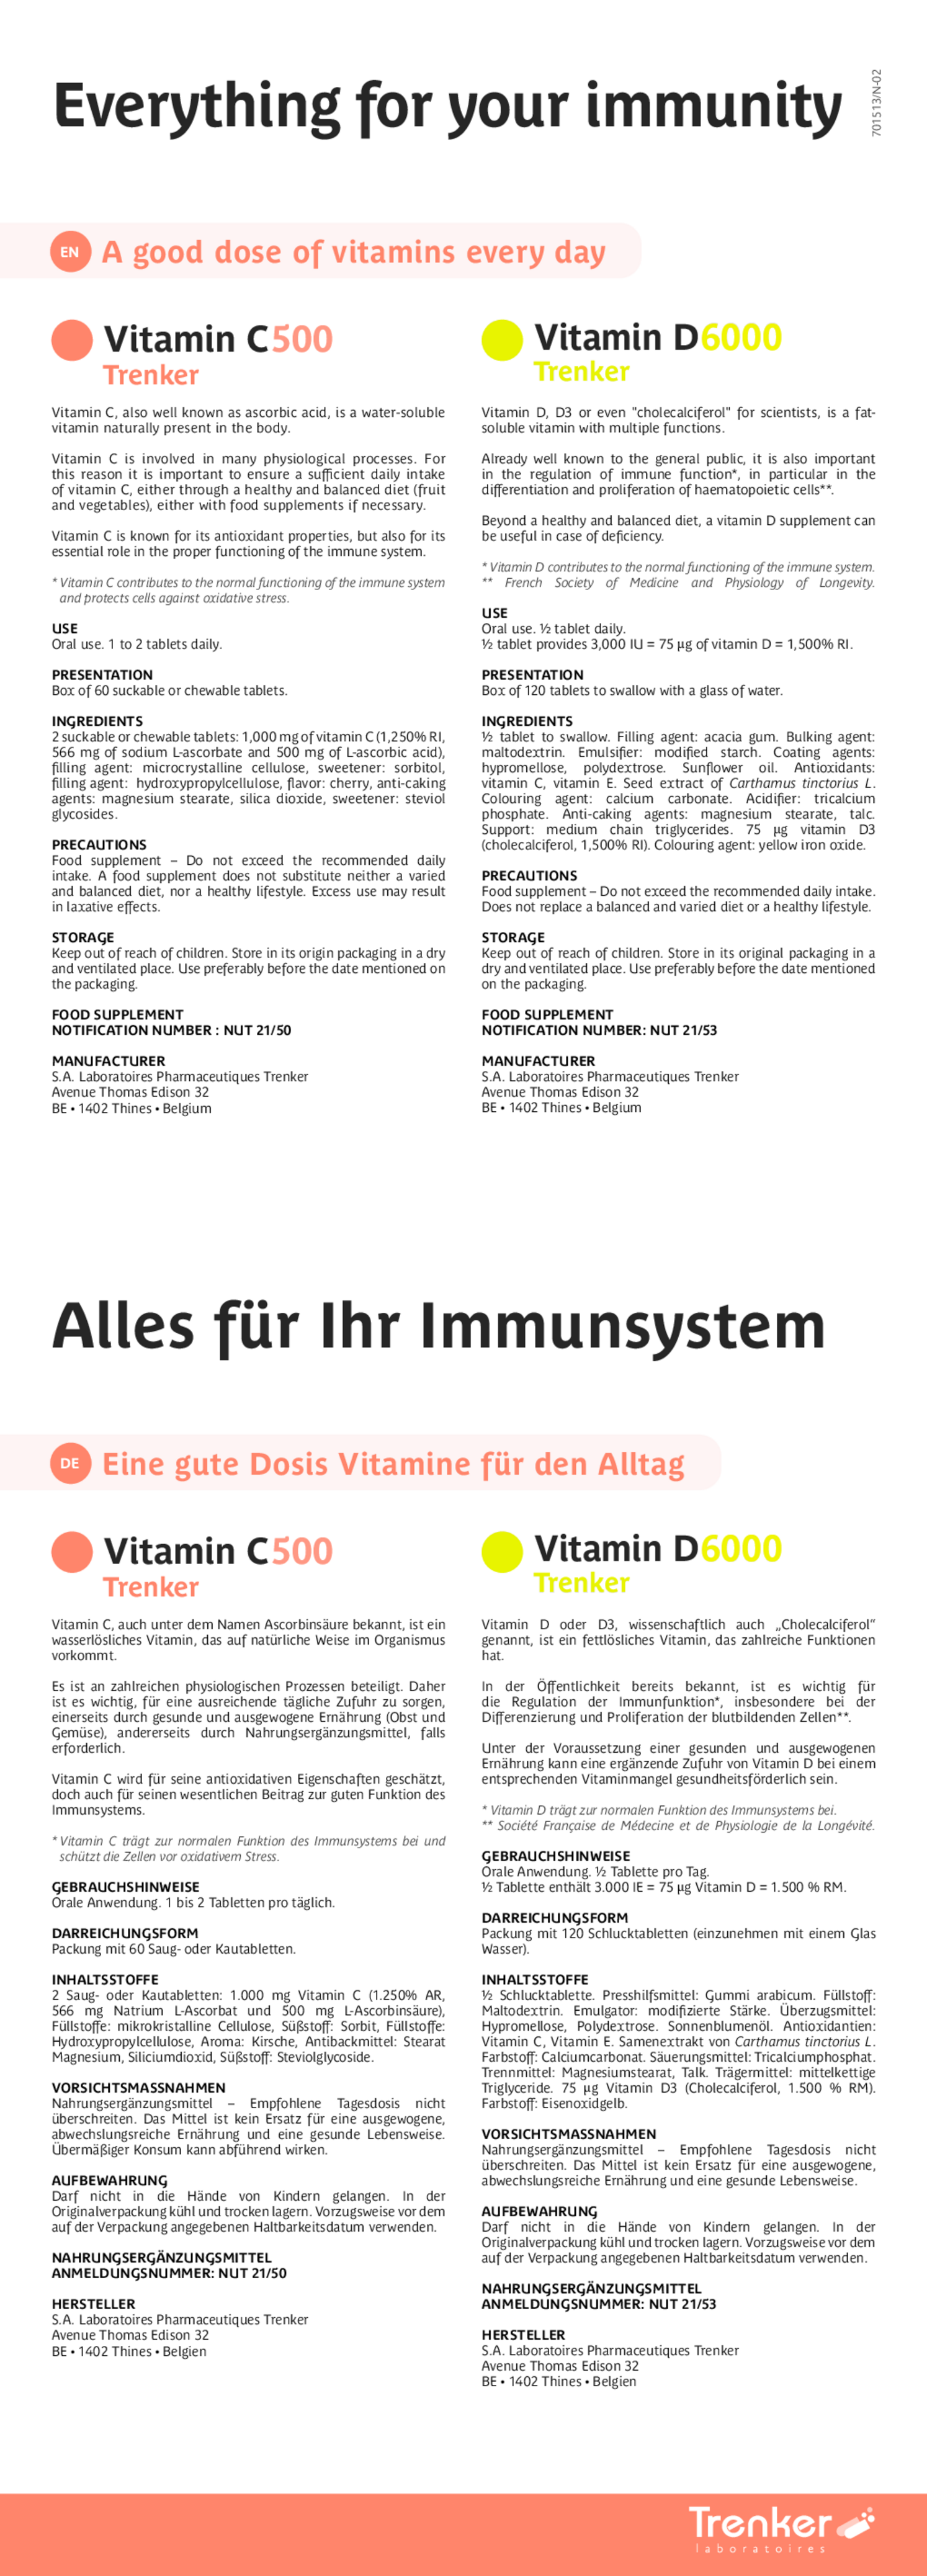 Vitamine D6000 afbeelding van document #2, gebruiksaanwijzing